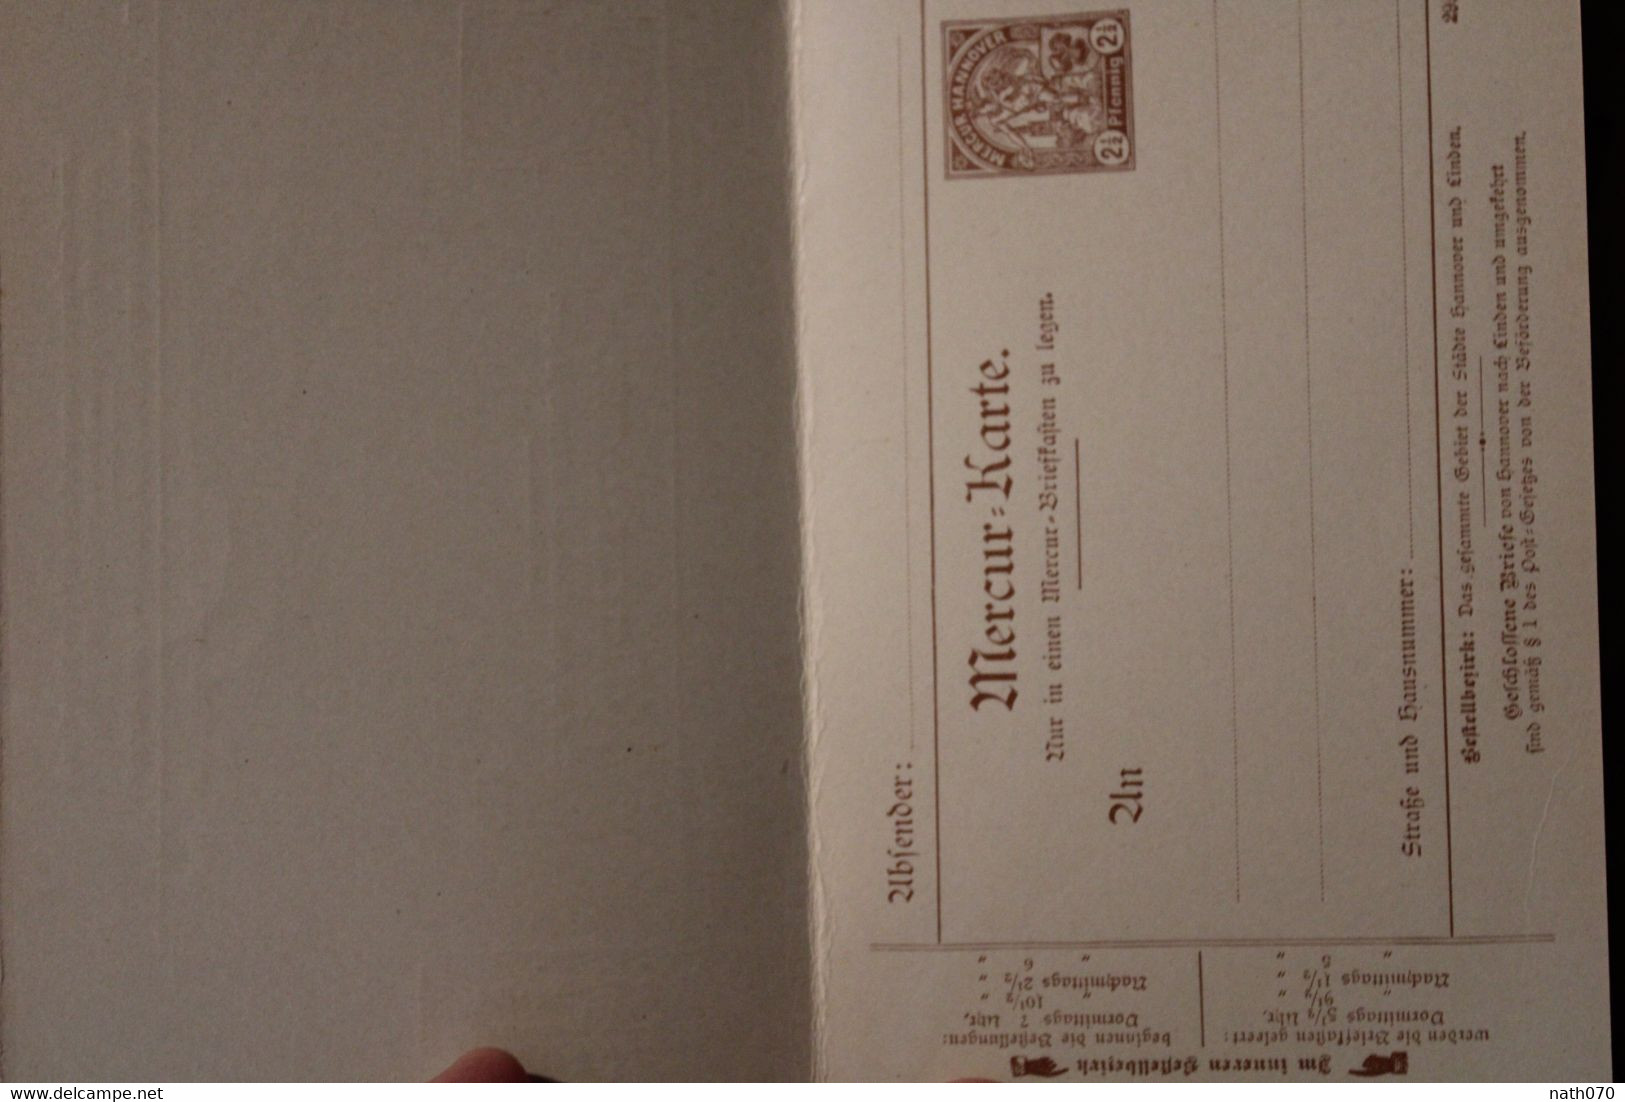 1900's Hannover Mercur Karte Stadtbriefe Privatpost Stadtpost Privat Poste Privée Allemagne Cover - Private & Local Mails